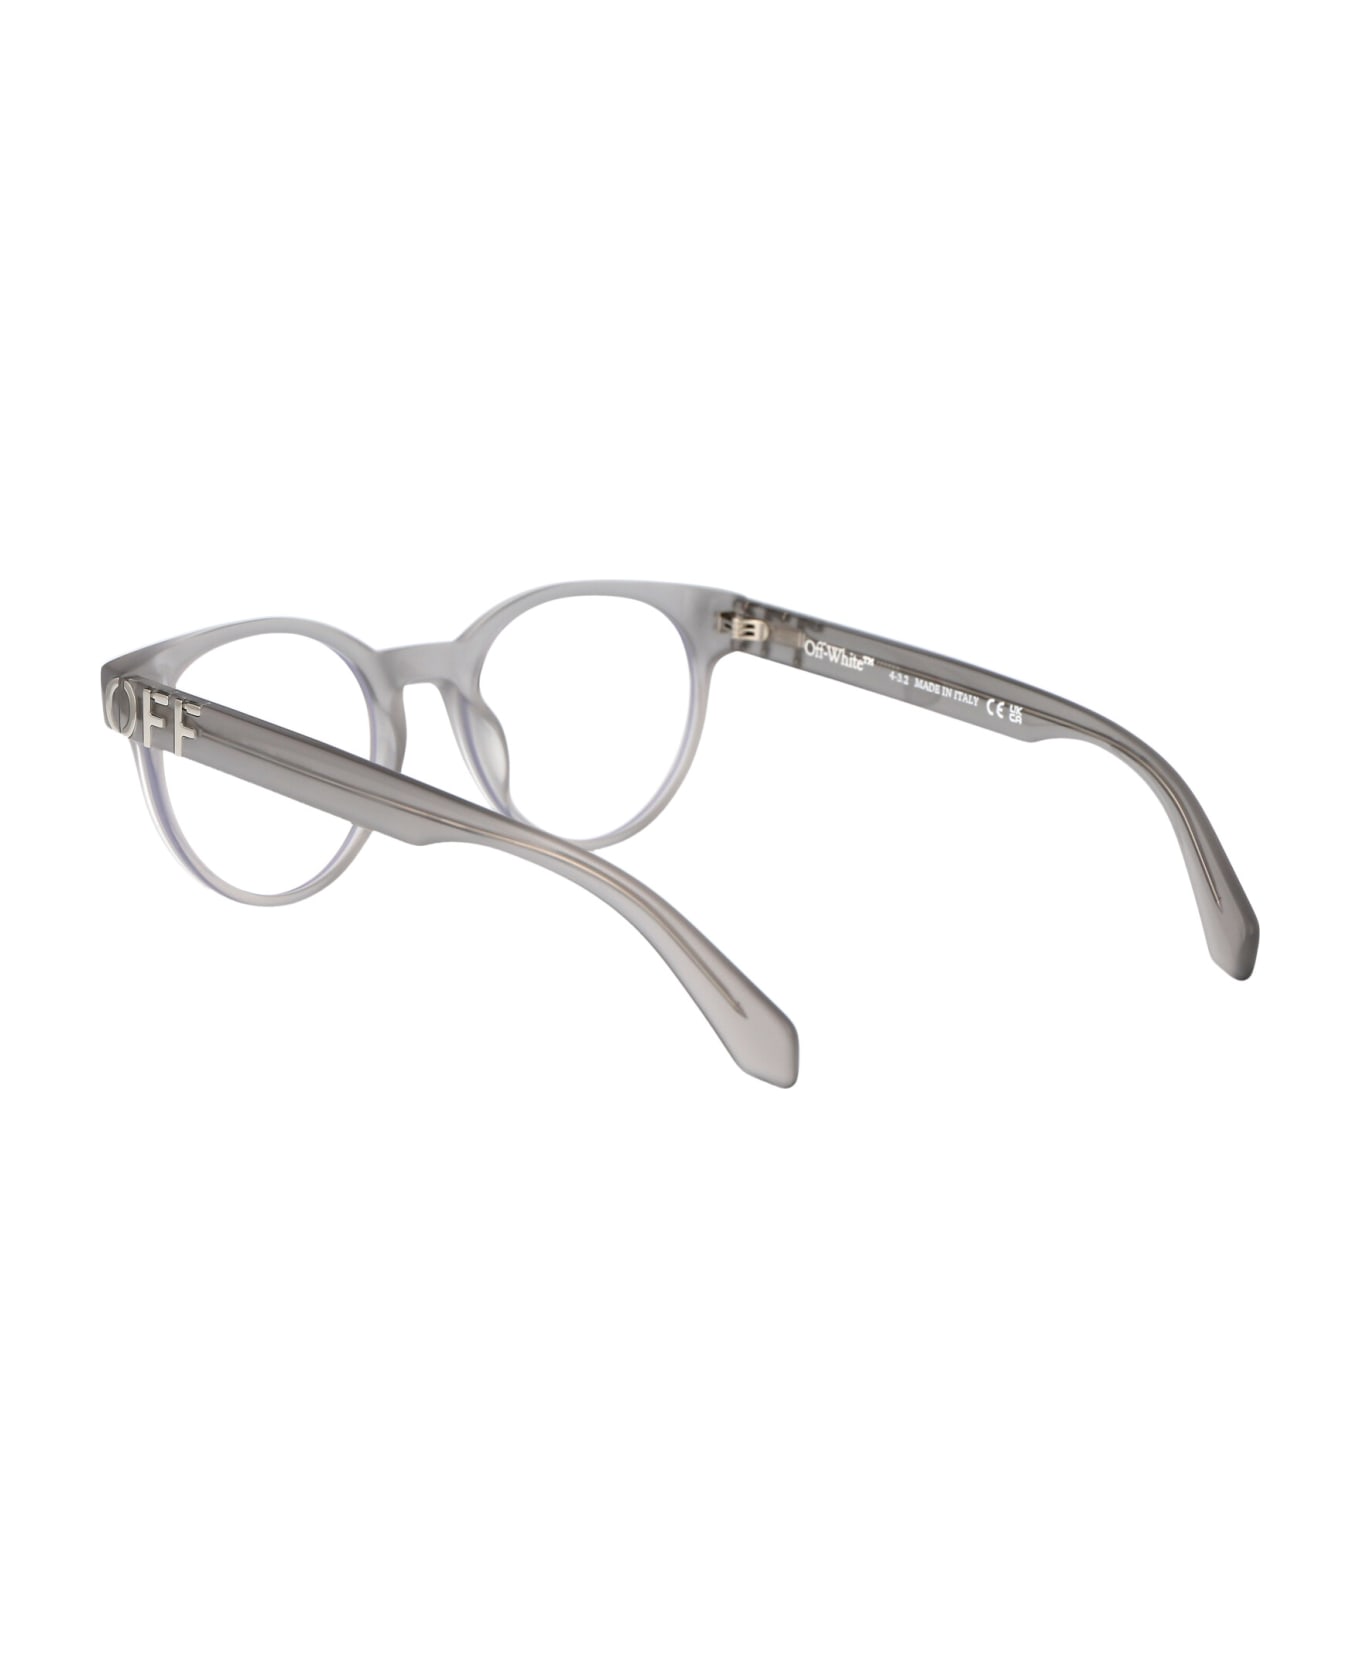 Off-White Optical Style 68 Glasses - 0900 GREY  アイウェア